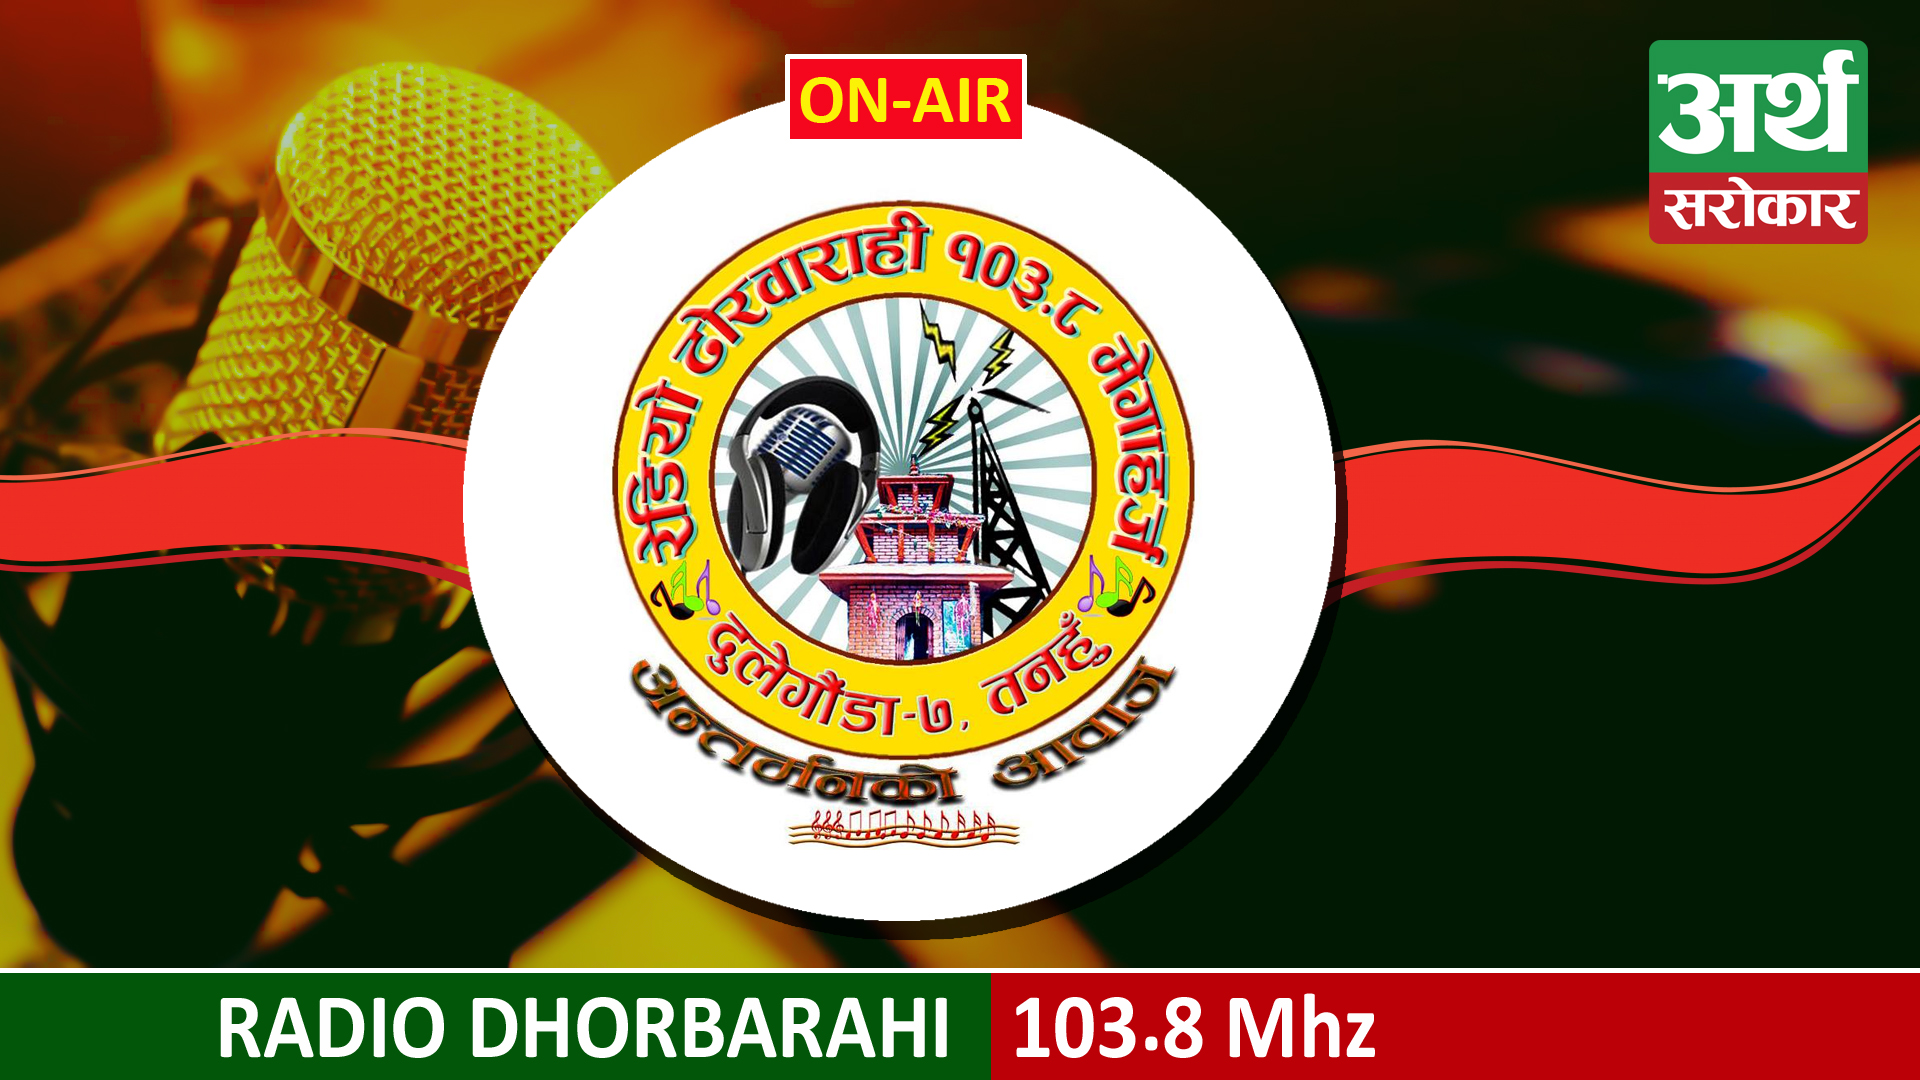 Radio Dhorbarahi 103.8 MHz